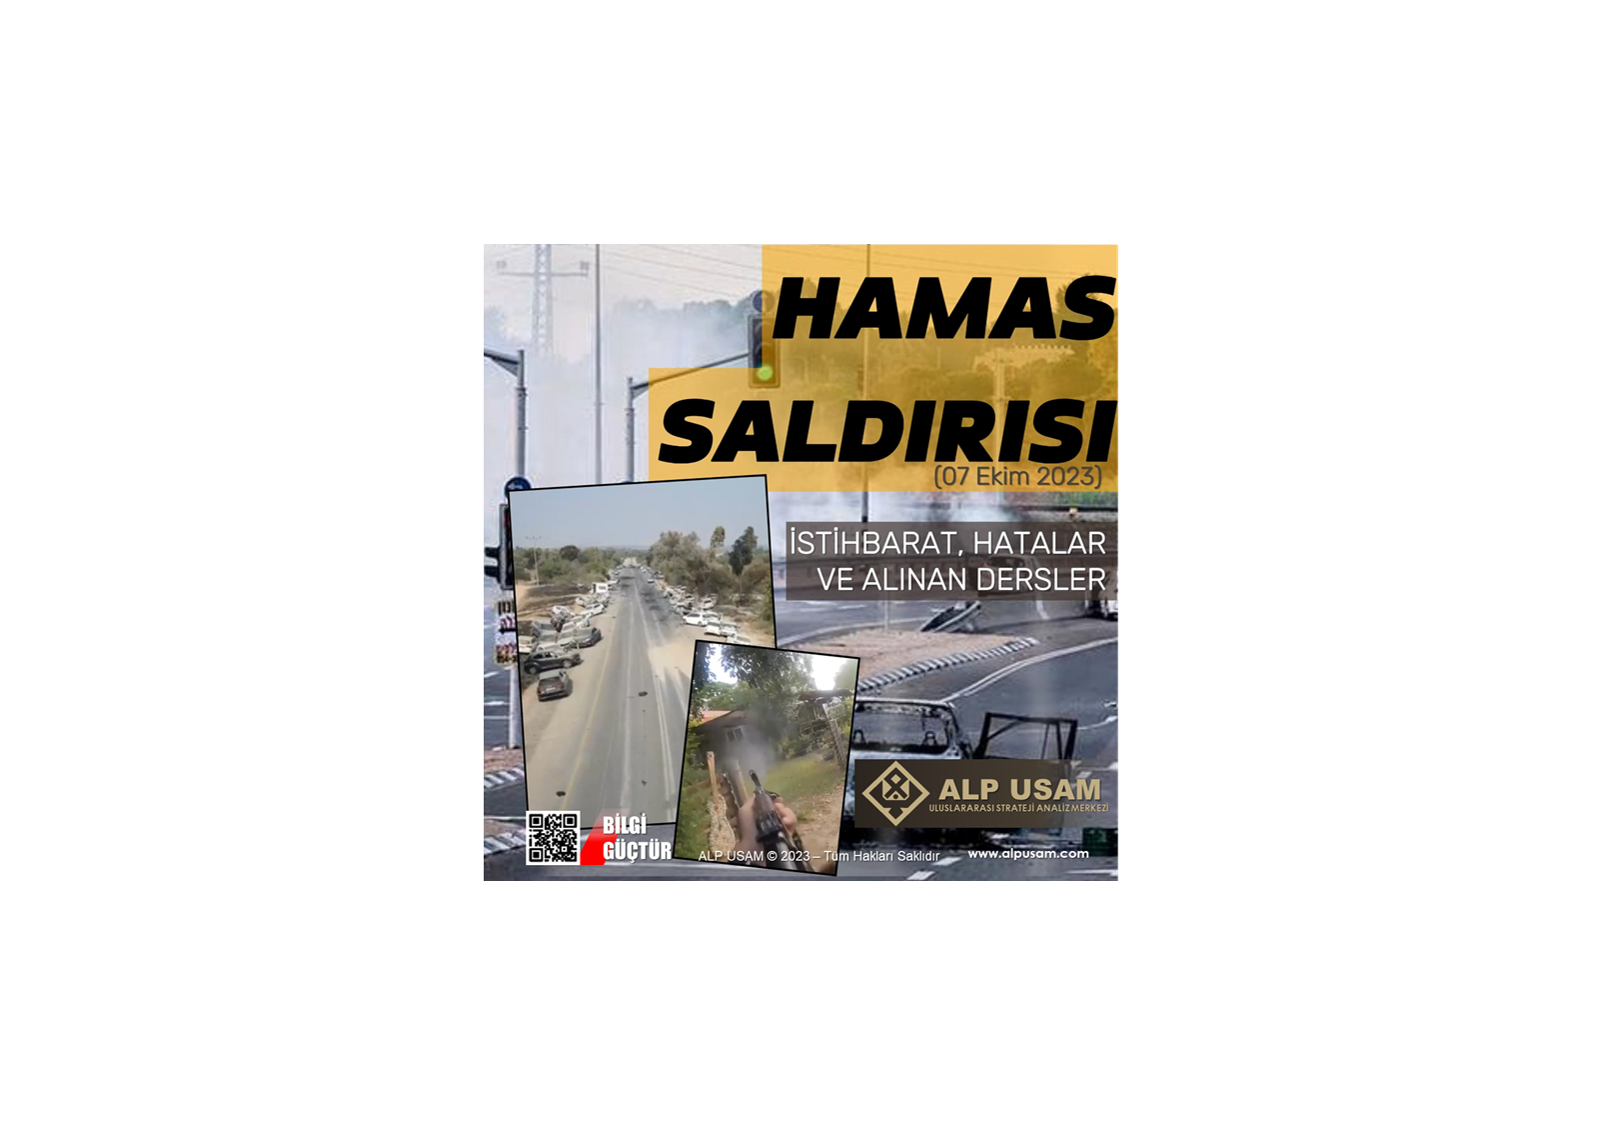 Hamas Saldırısı (07 EKİM 2023) / İSTİHBARAT, HATALAR VE ALINAN DERSLER